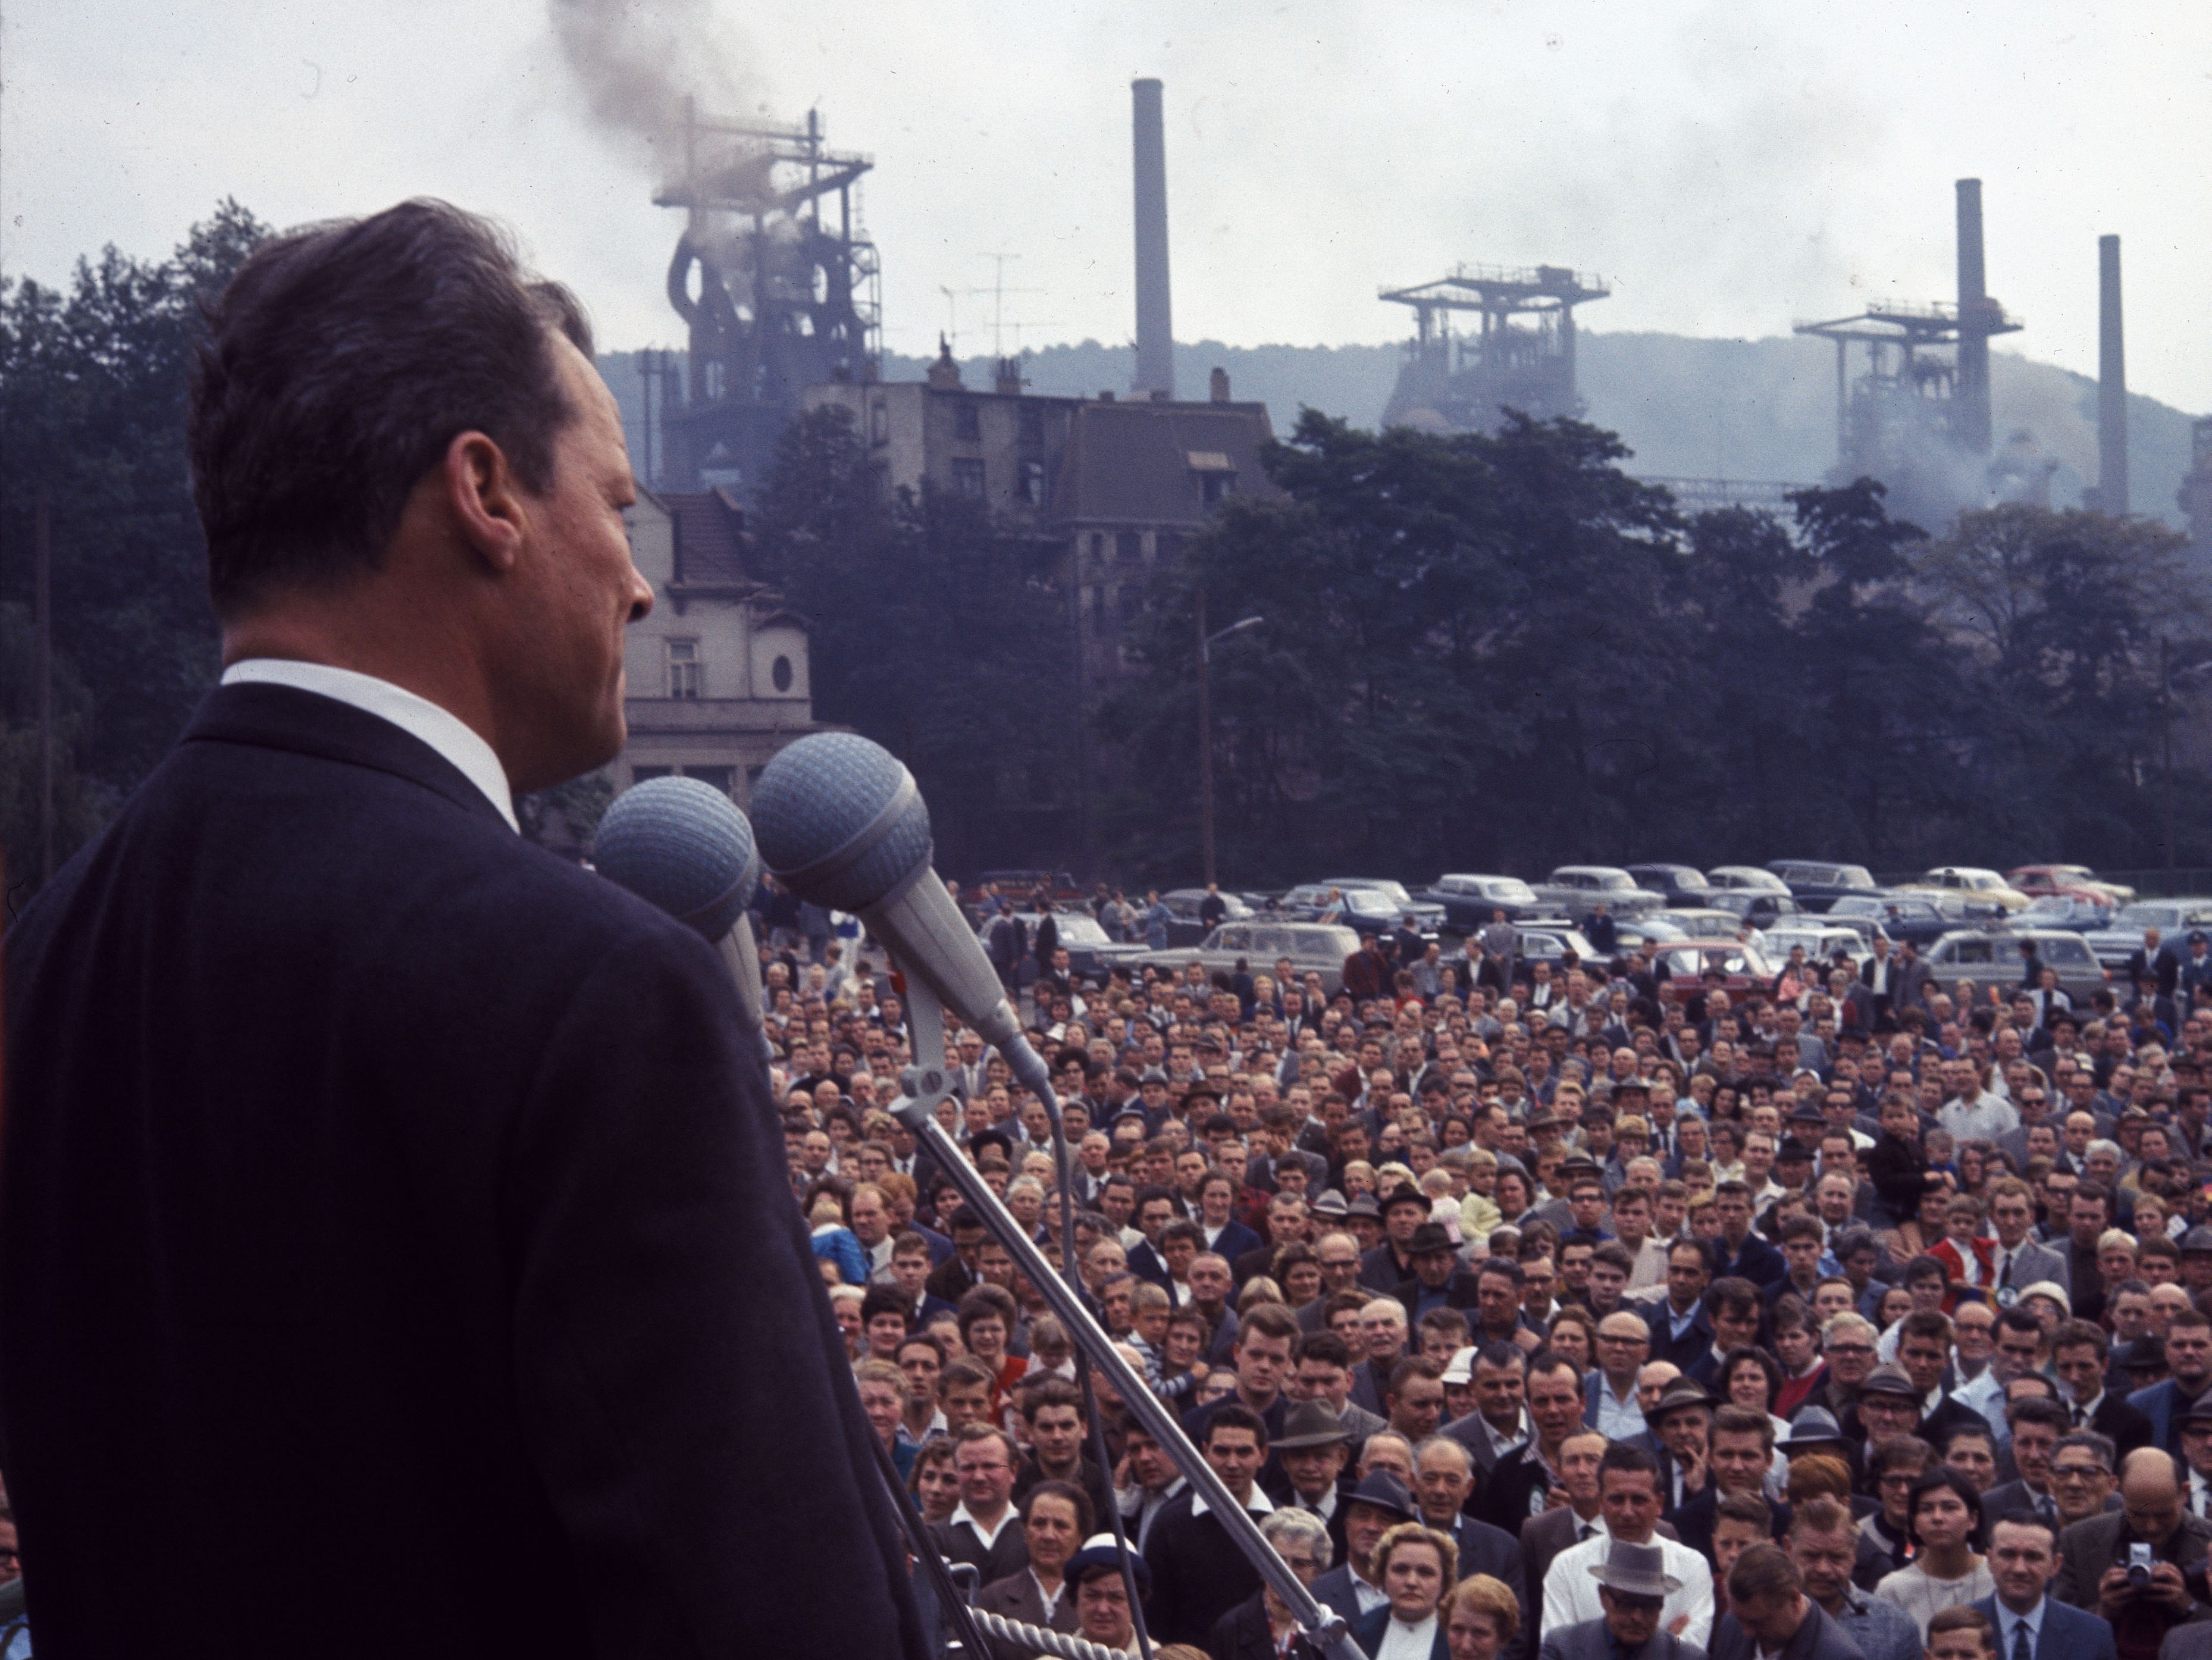 Willy Brandt steht 1965 für seinen Wahlkampf auf einer Bühne. Vor Ihm eine steht eine Menschenmenge.